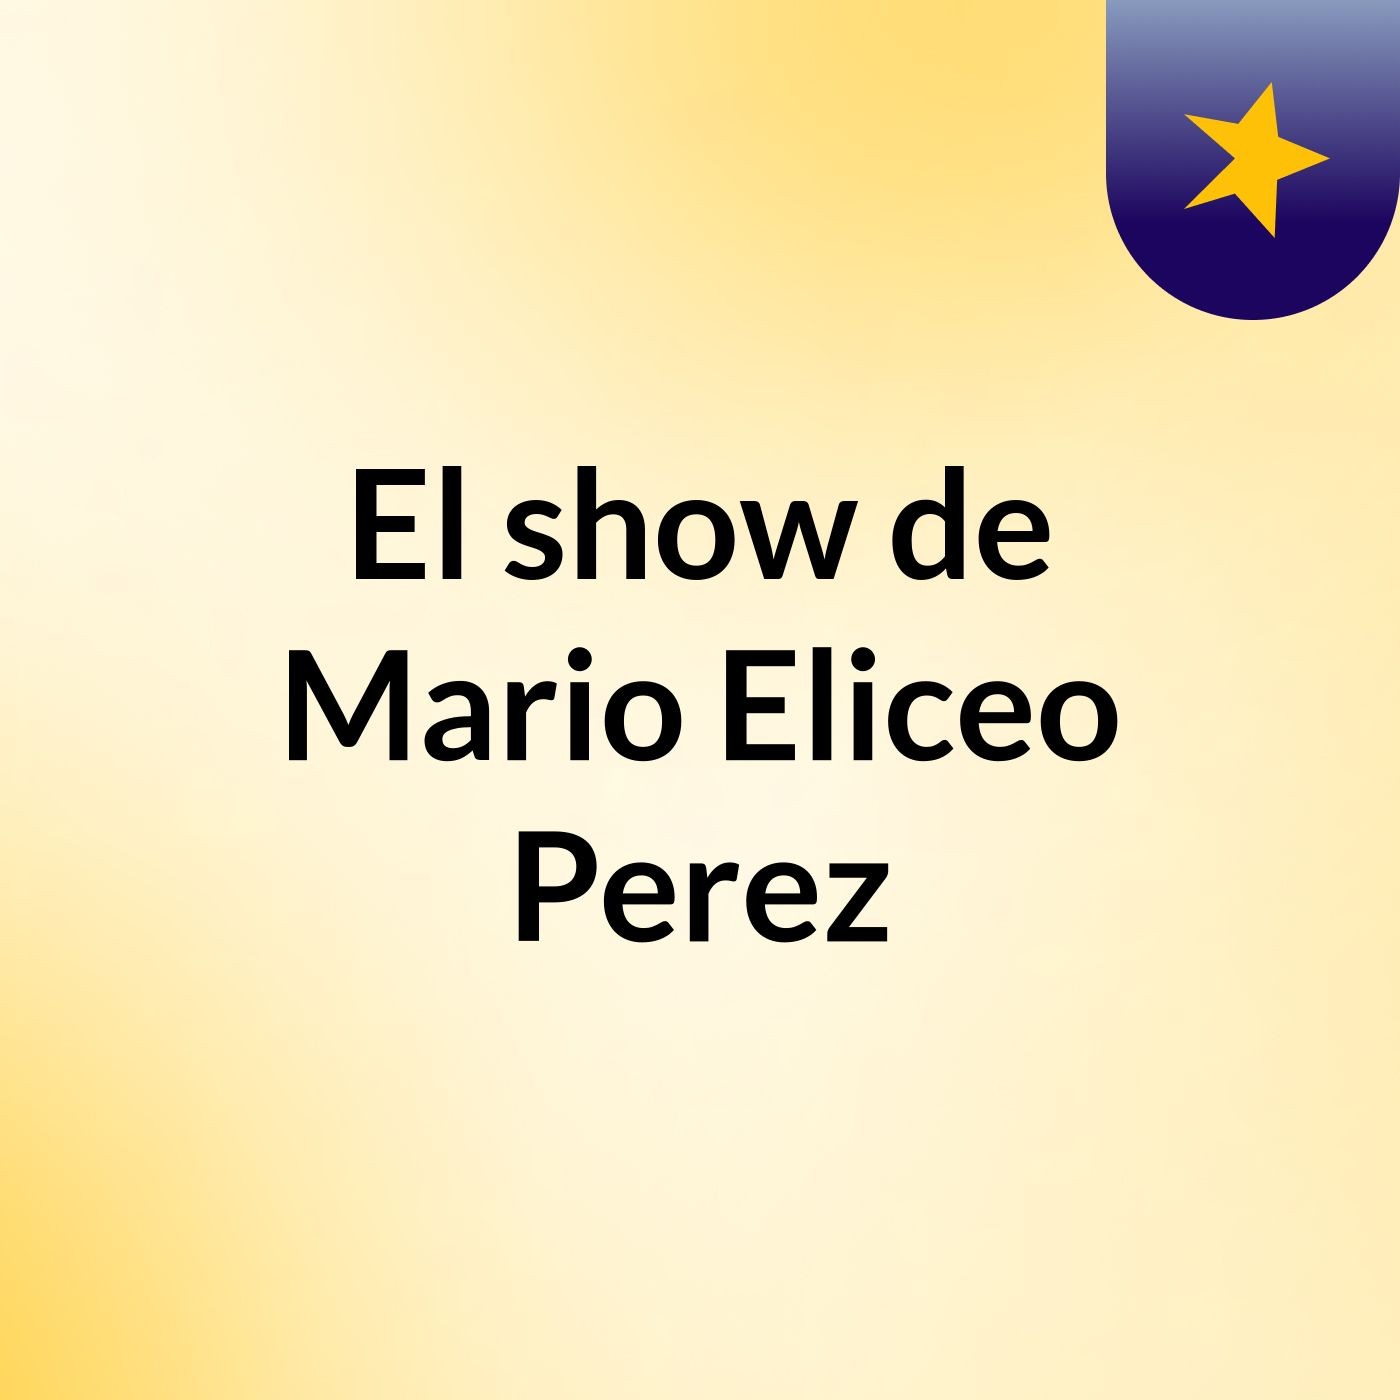 Episodio 5 - El show de Mario Eliceo Perez